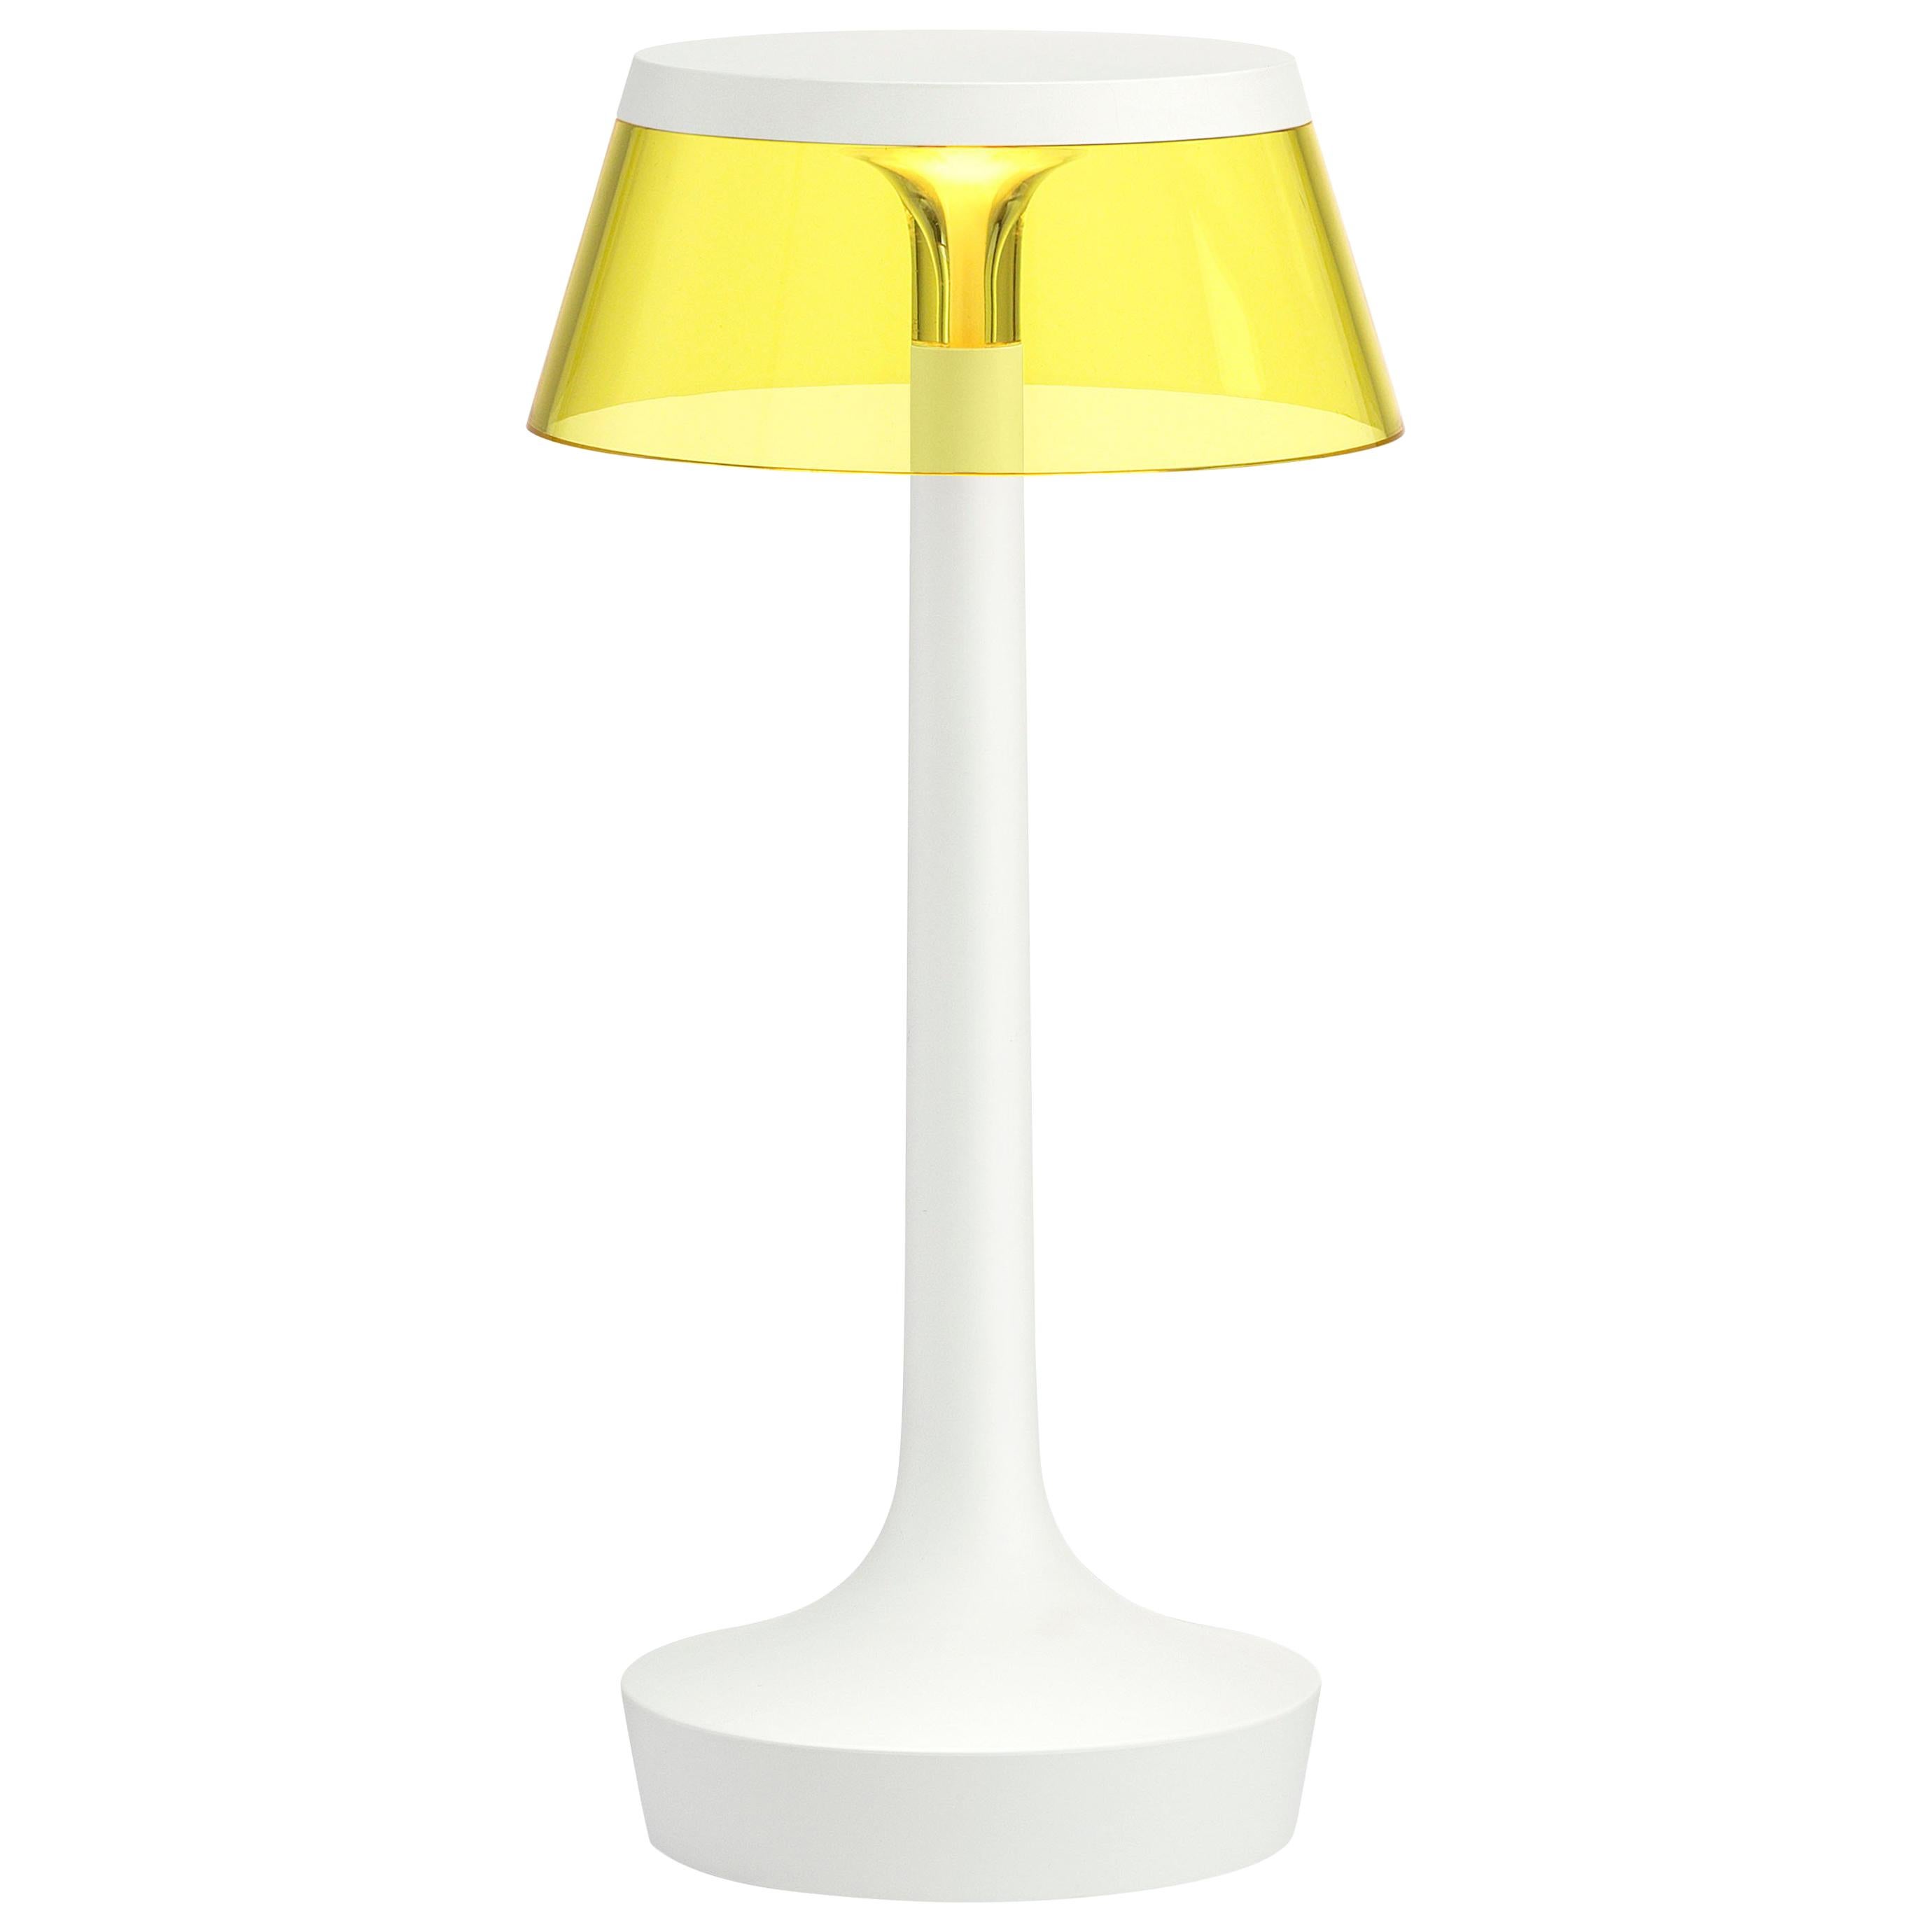 FLOS Bon Jour, weiße Lampe ohne Glühbirne mit gelber Krone von Philippe Starck